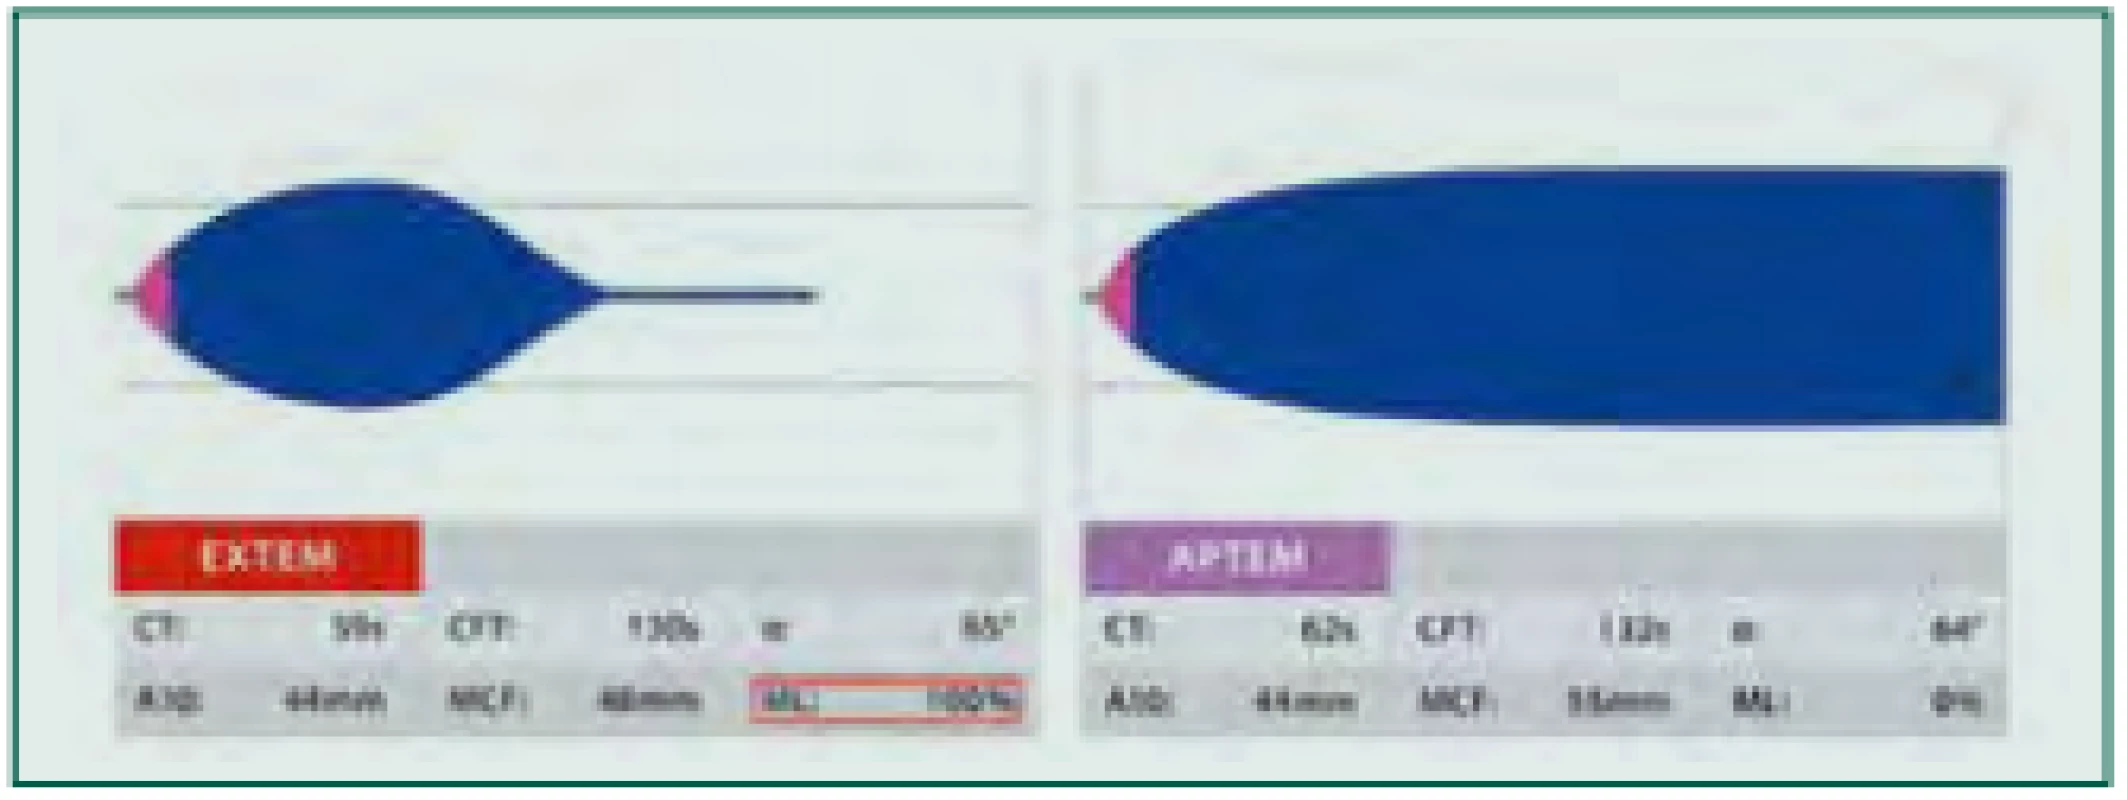 Hyperfibrinolýza: Provedený test EXTEM s patologickým tvarem
křivky a patologickými hodnotami parametrů LI30, LI60 či ML (červený ráme‑
ček, normální hodnoty 0–15 %) může znamenat zvýšenou míru fibrinolýzy.
K ověření je proveden test APTEM s antifibrinolyticky působícím aprotininem.
Při normalizaci tvaru křivky a parametrů lýzy přichází v úvahu terapie anti‑
fibrinolytiky, např. kyselinou tranexamovou.